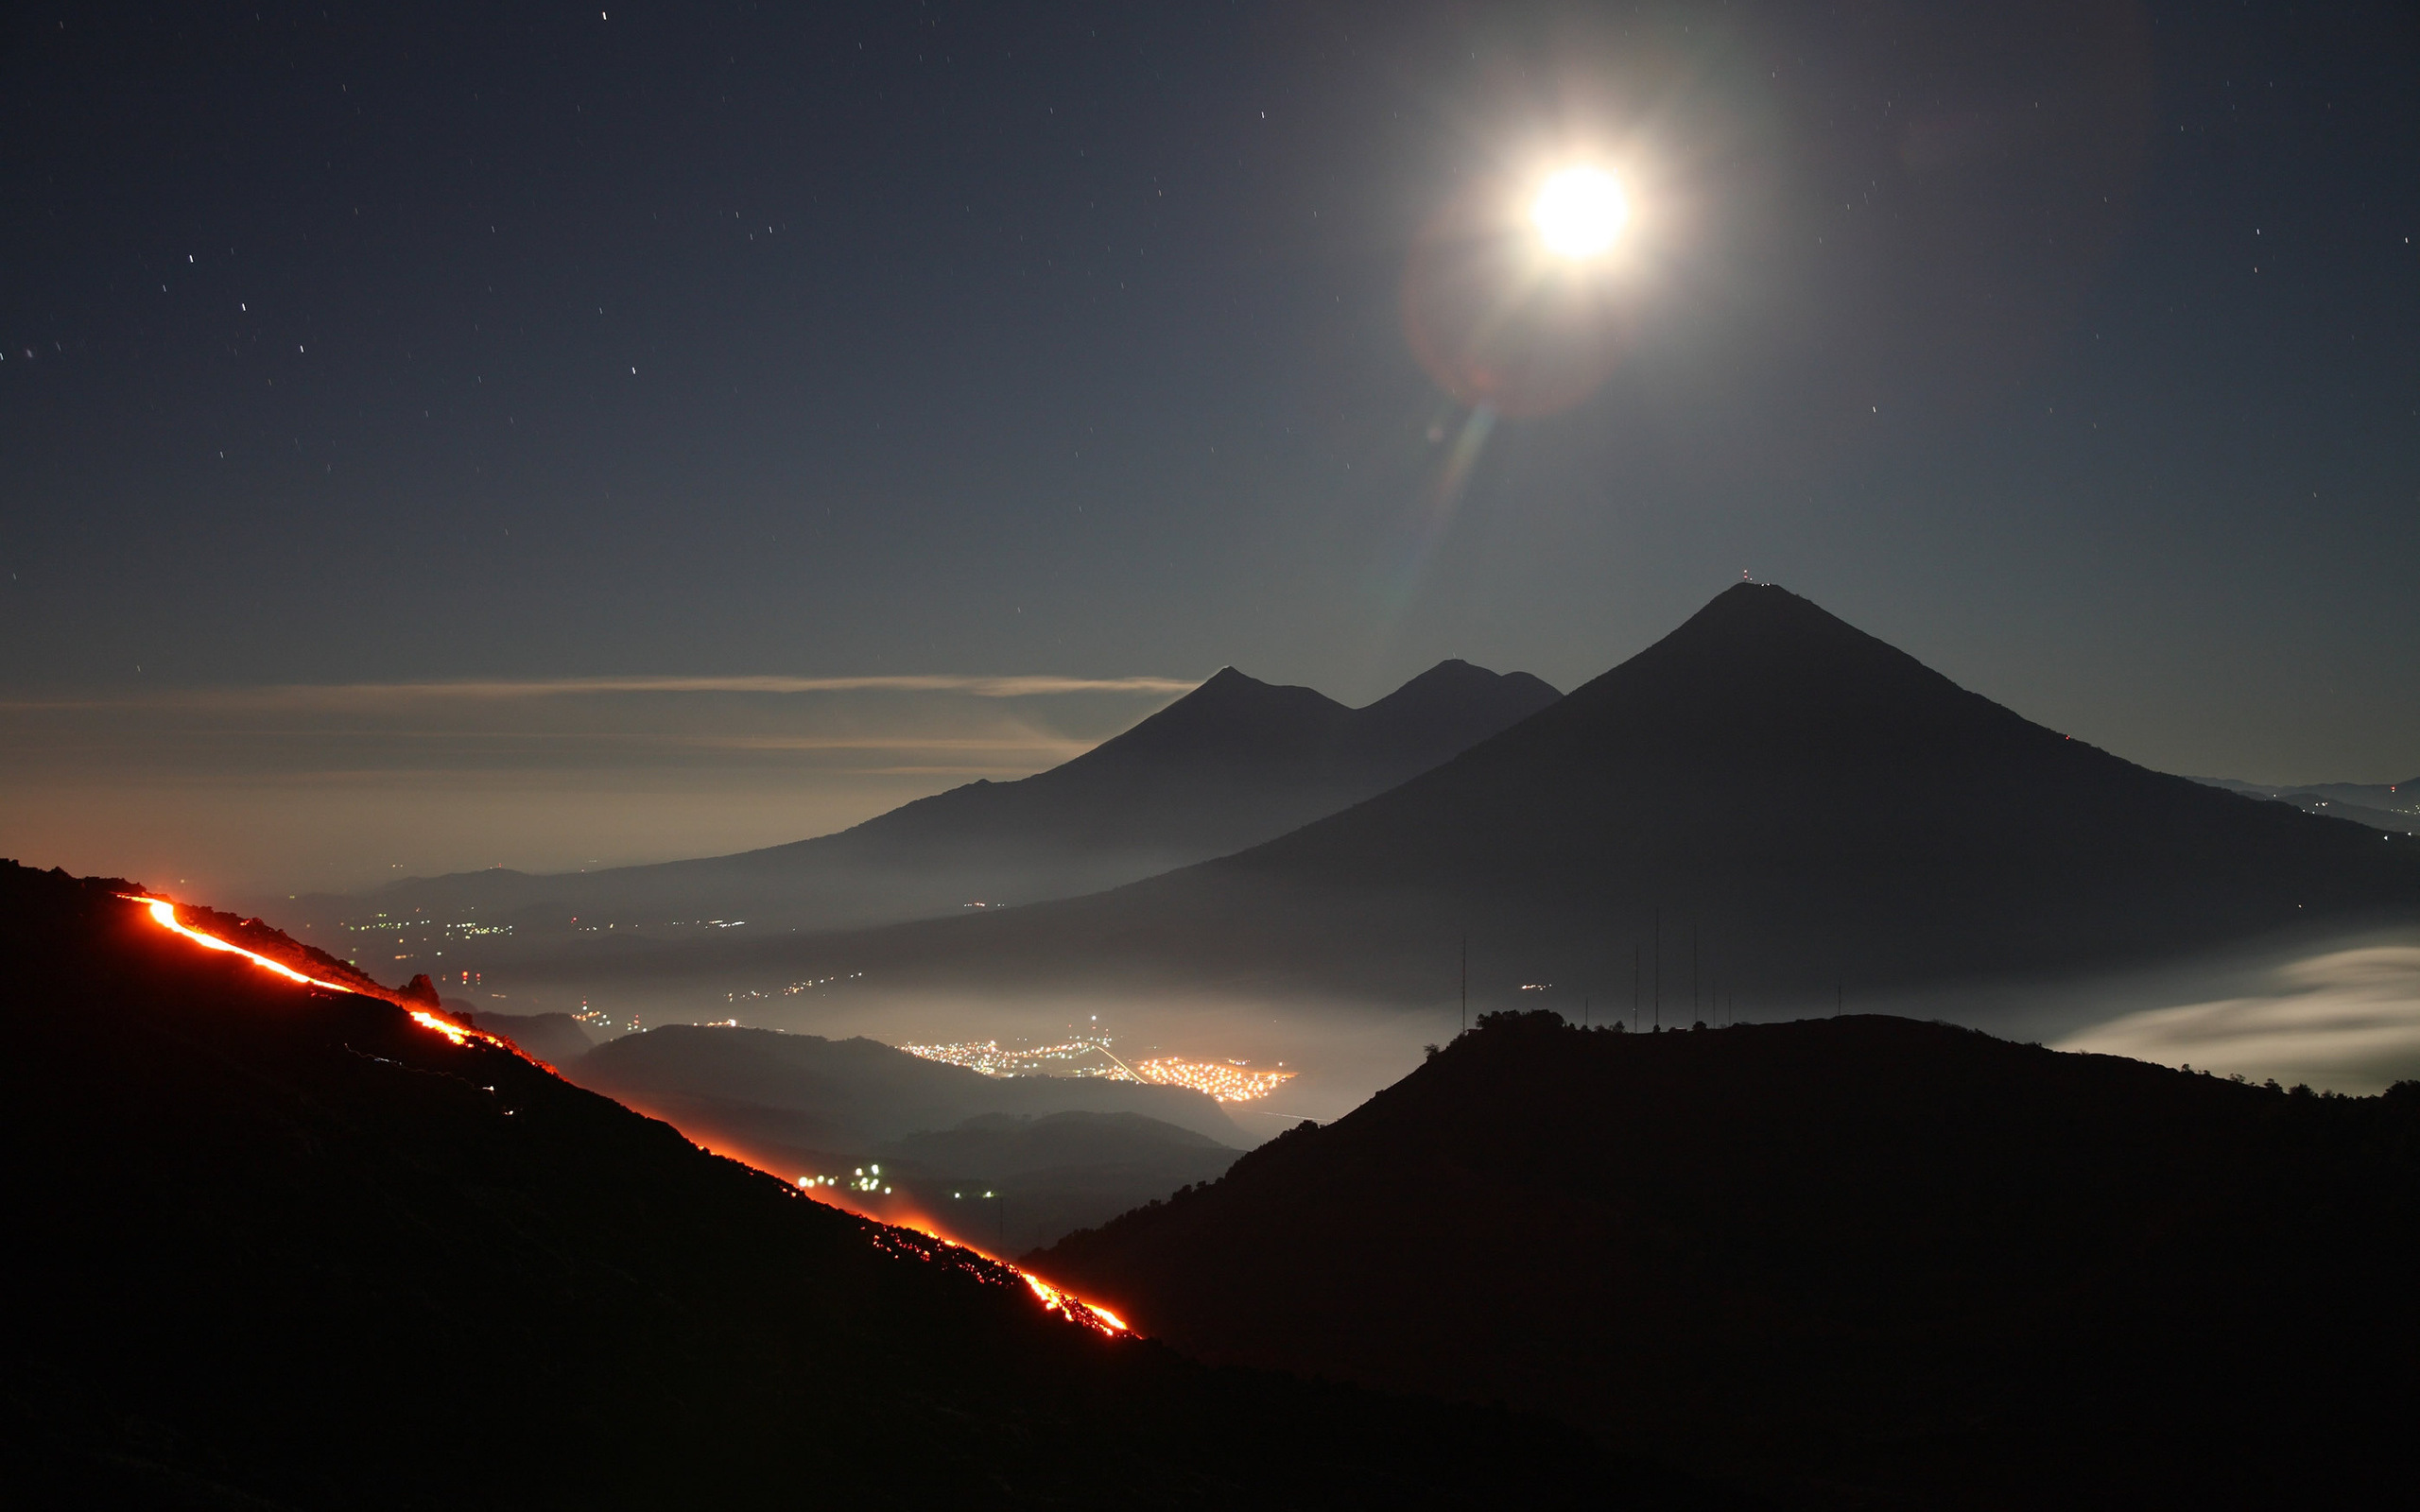 3d обои Яркая луна над вершинами гор, вид на шоссе с огнями машин и город в долине  ночь # 67430